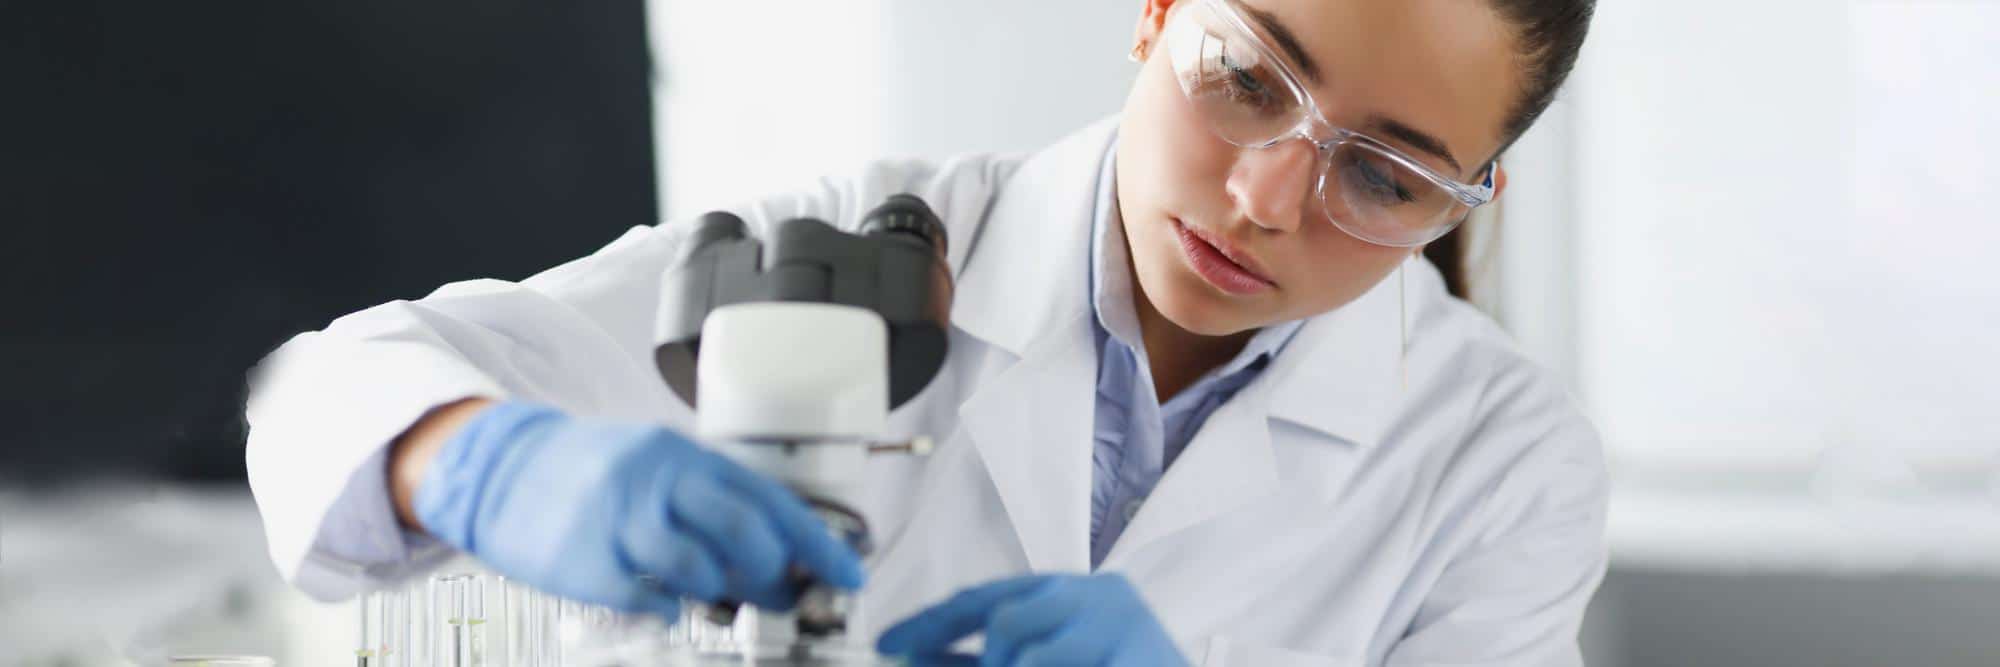 femme-scientifique-chimiste-dans-lunettes-protection-mettant-lame-verre-au-microscope-laboratoire